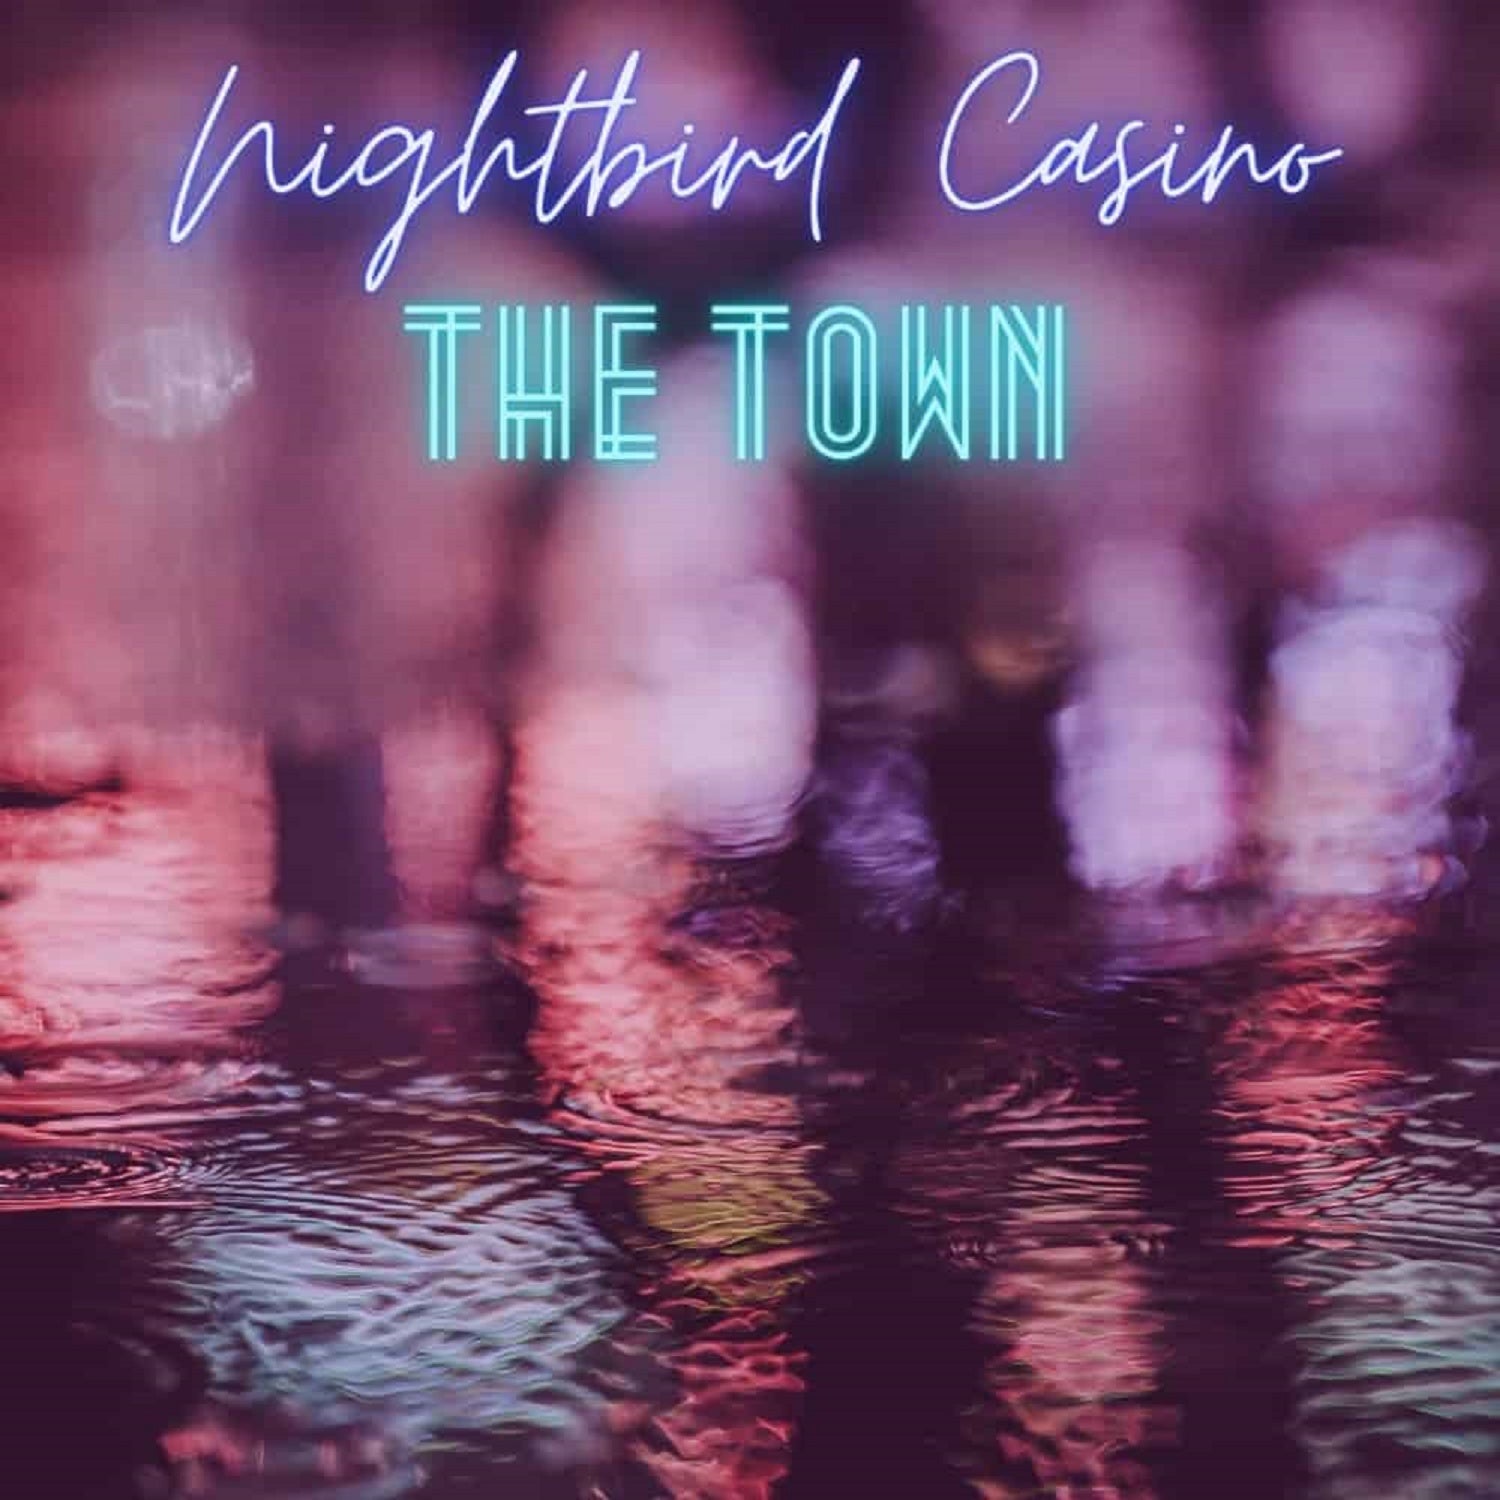 Nightbird Casino – ‘The Town’